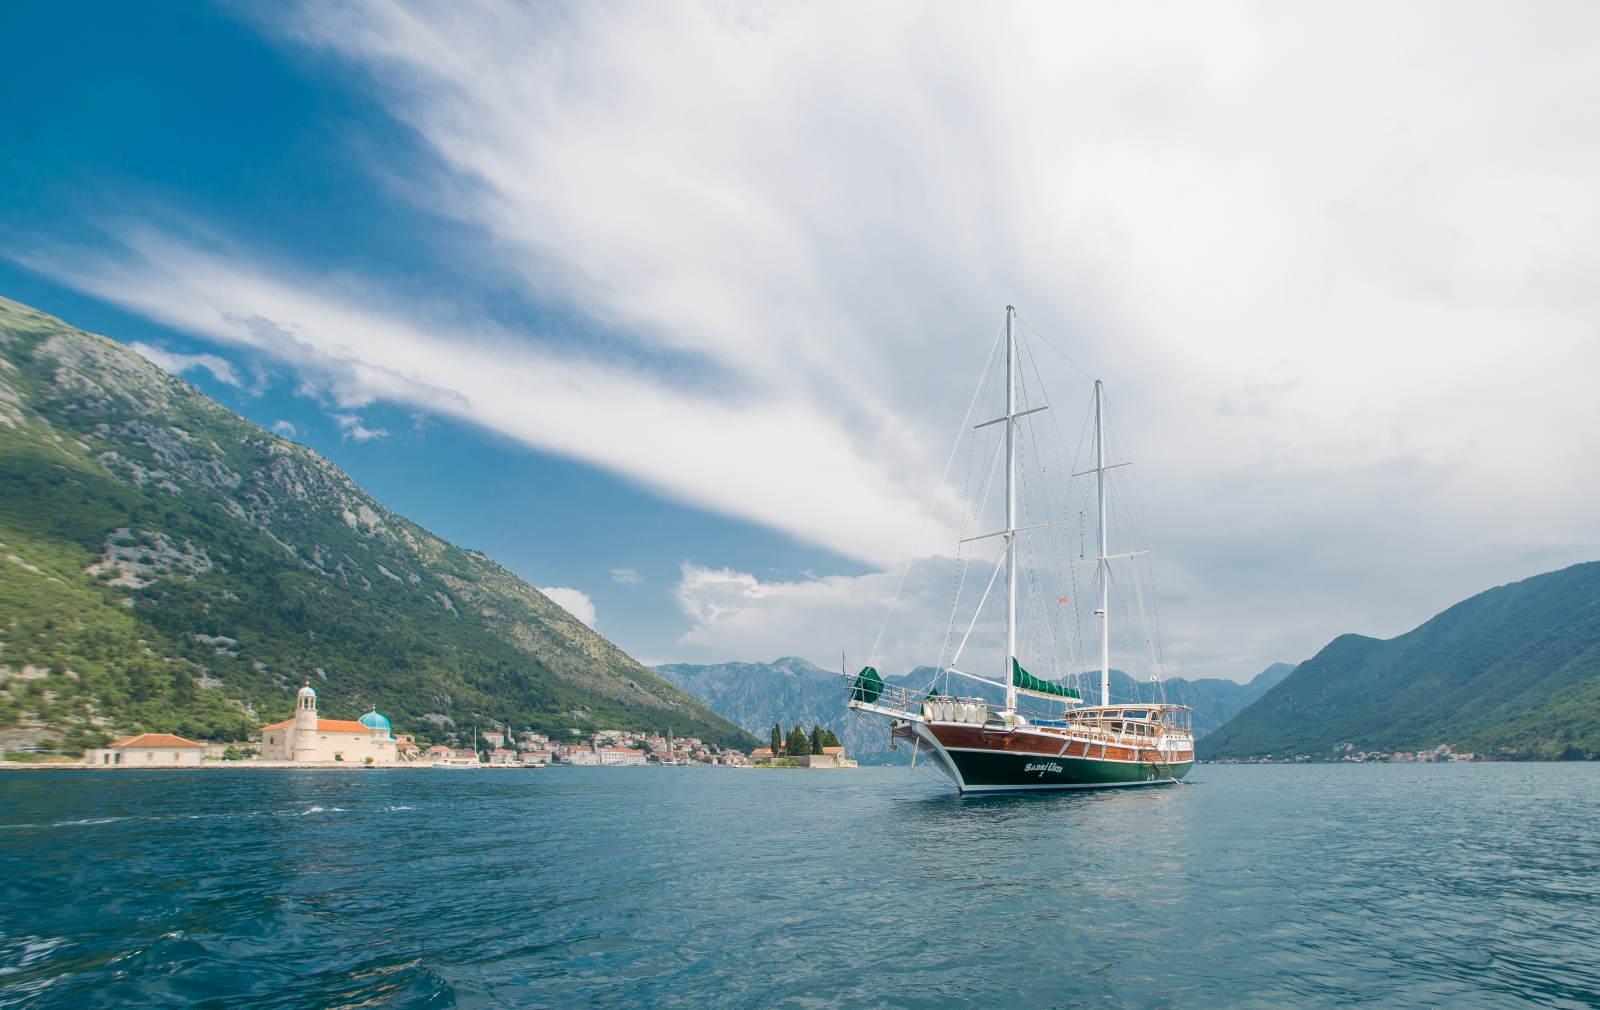 luxury gulet Sadri Usta 1 sailing along the Montenegro coast